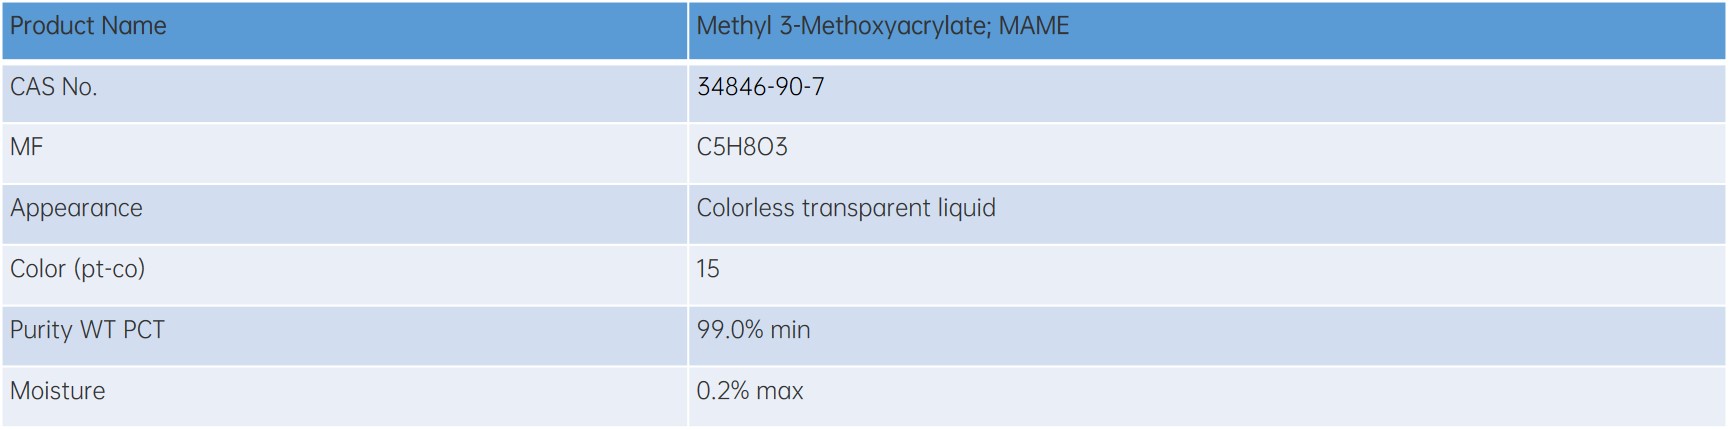 Methyl 3-Methoxyacrylate (MAME)